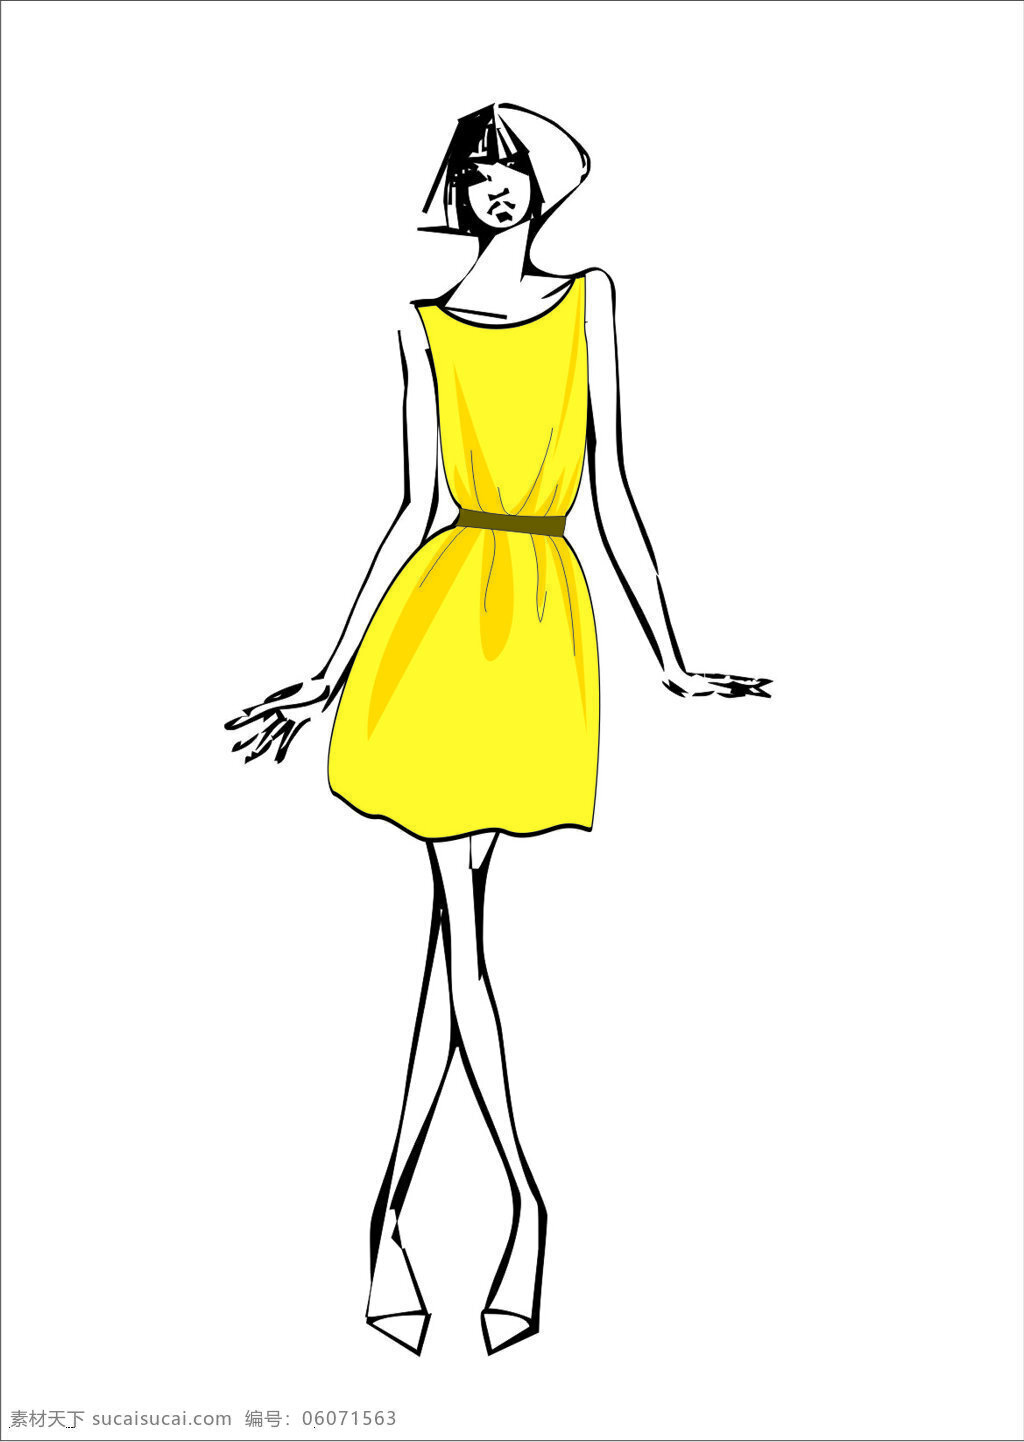 服装 服装设计 模板下载 黄色 连衣裙 人体 设计素材 效果图 文化艺术 其他服装素材